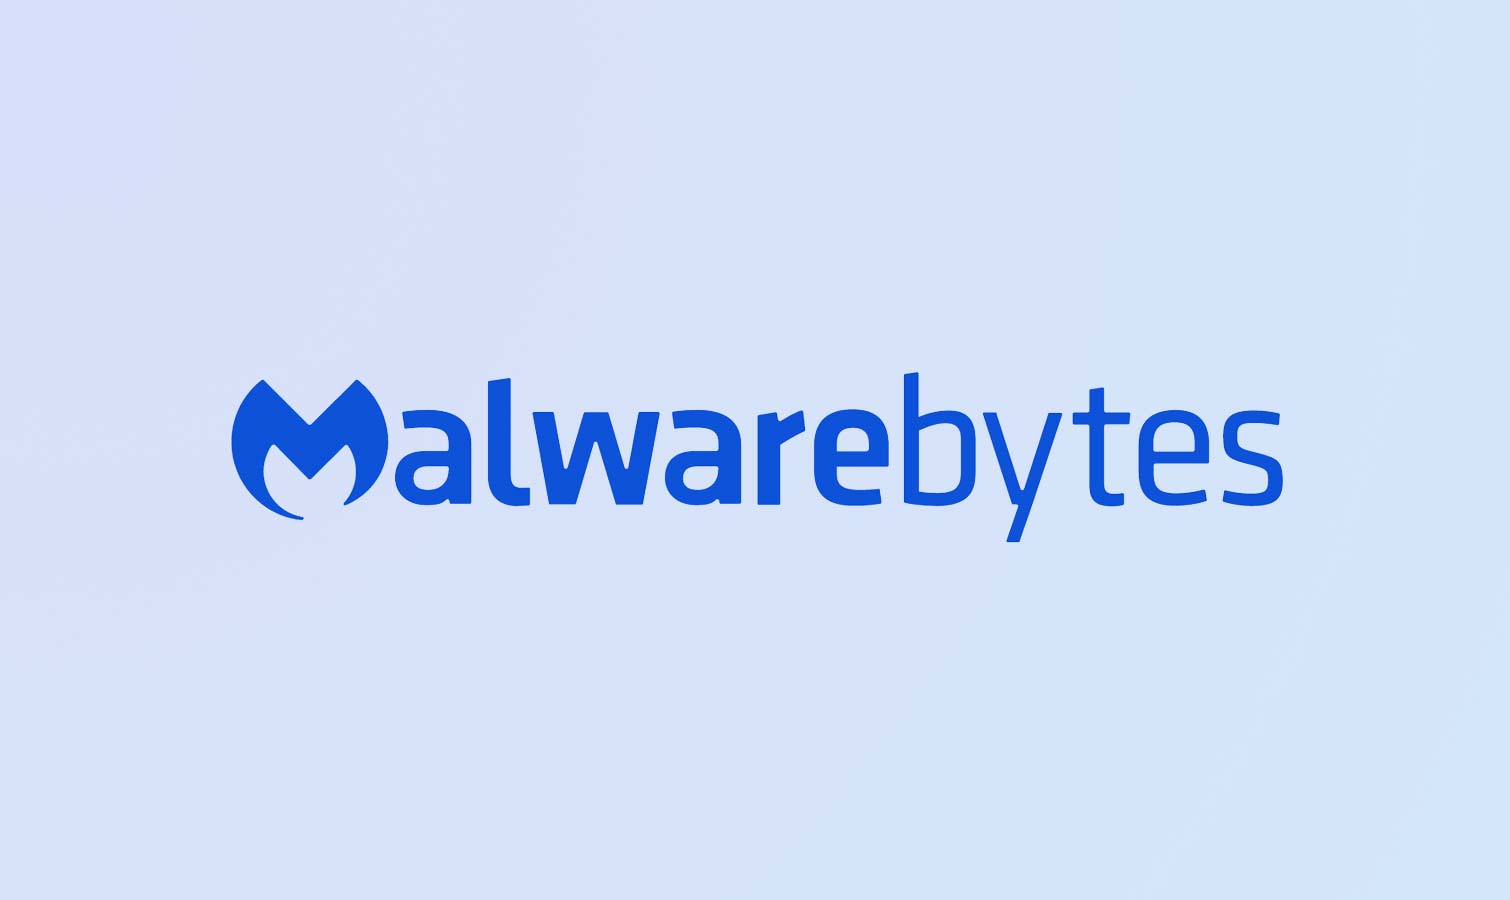 malwarebytes preminum pro free download full version